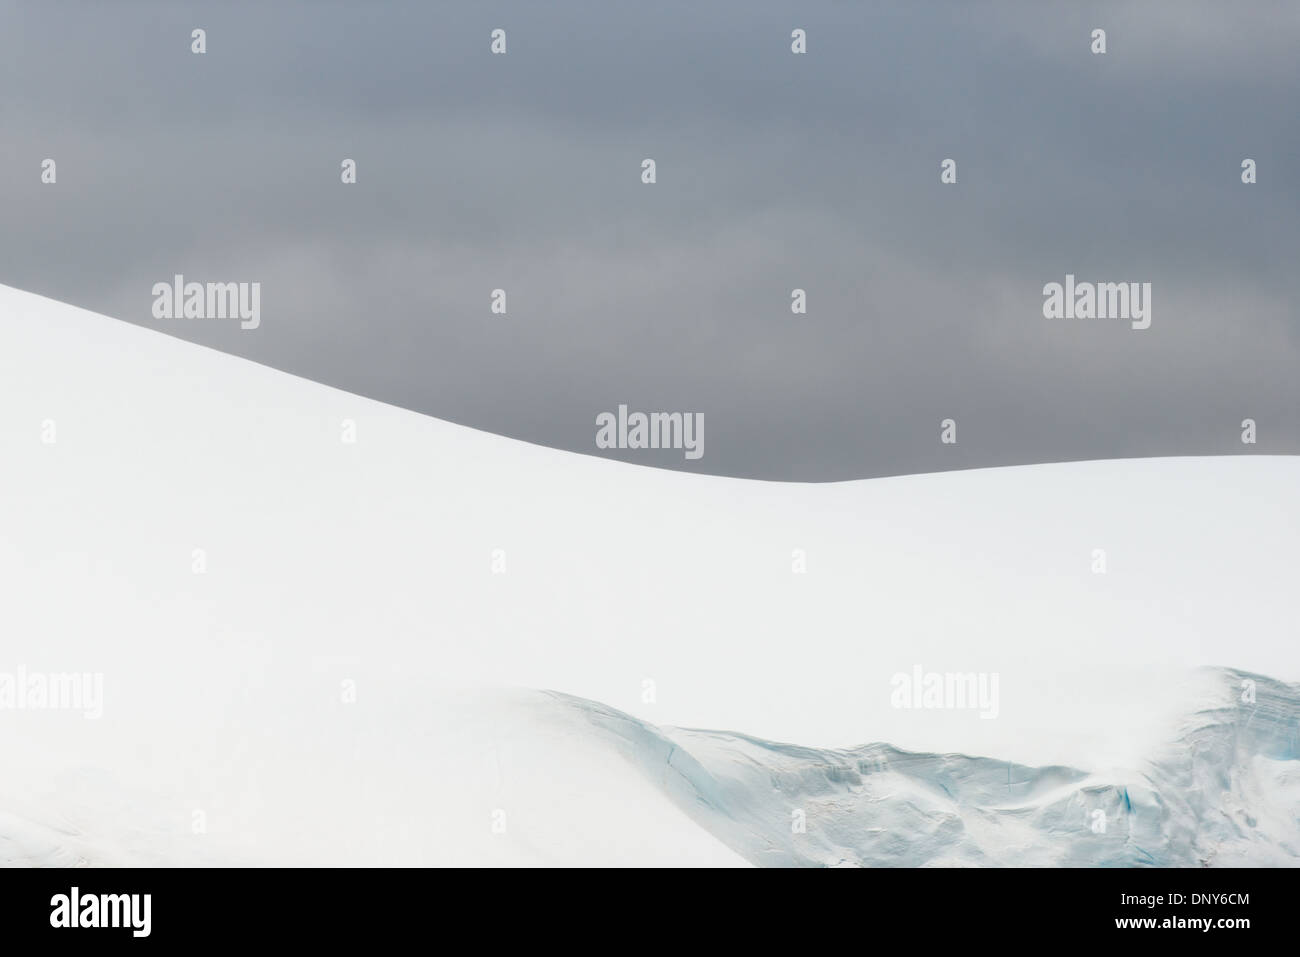 Antartide - la neve e il ghiaccio che ricopre le creste della montagna crea forme contro il grigio cielo nuvoloso dietro nel Lemaire Channel sul lato occidentale della penisola antartica. Il Lemaire Channel è talvolta indicata come "Kodak Gap' in un cenno al suo famoso vedute panoramiche. Foto Stock